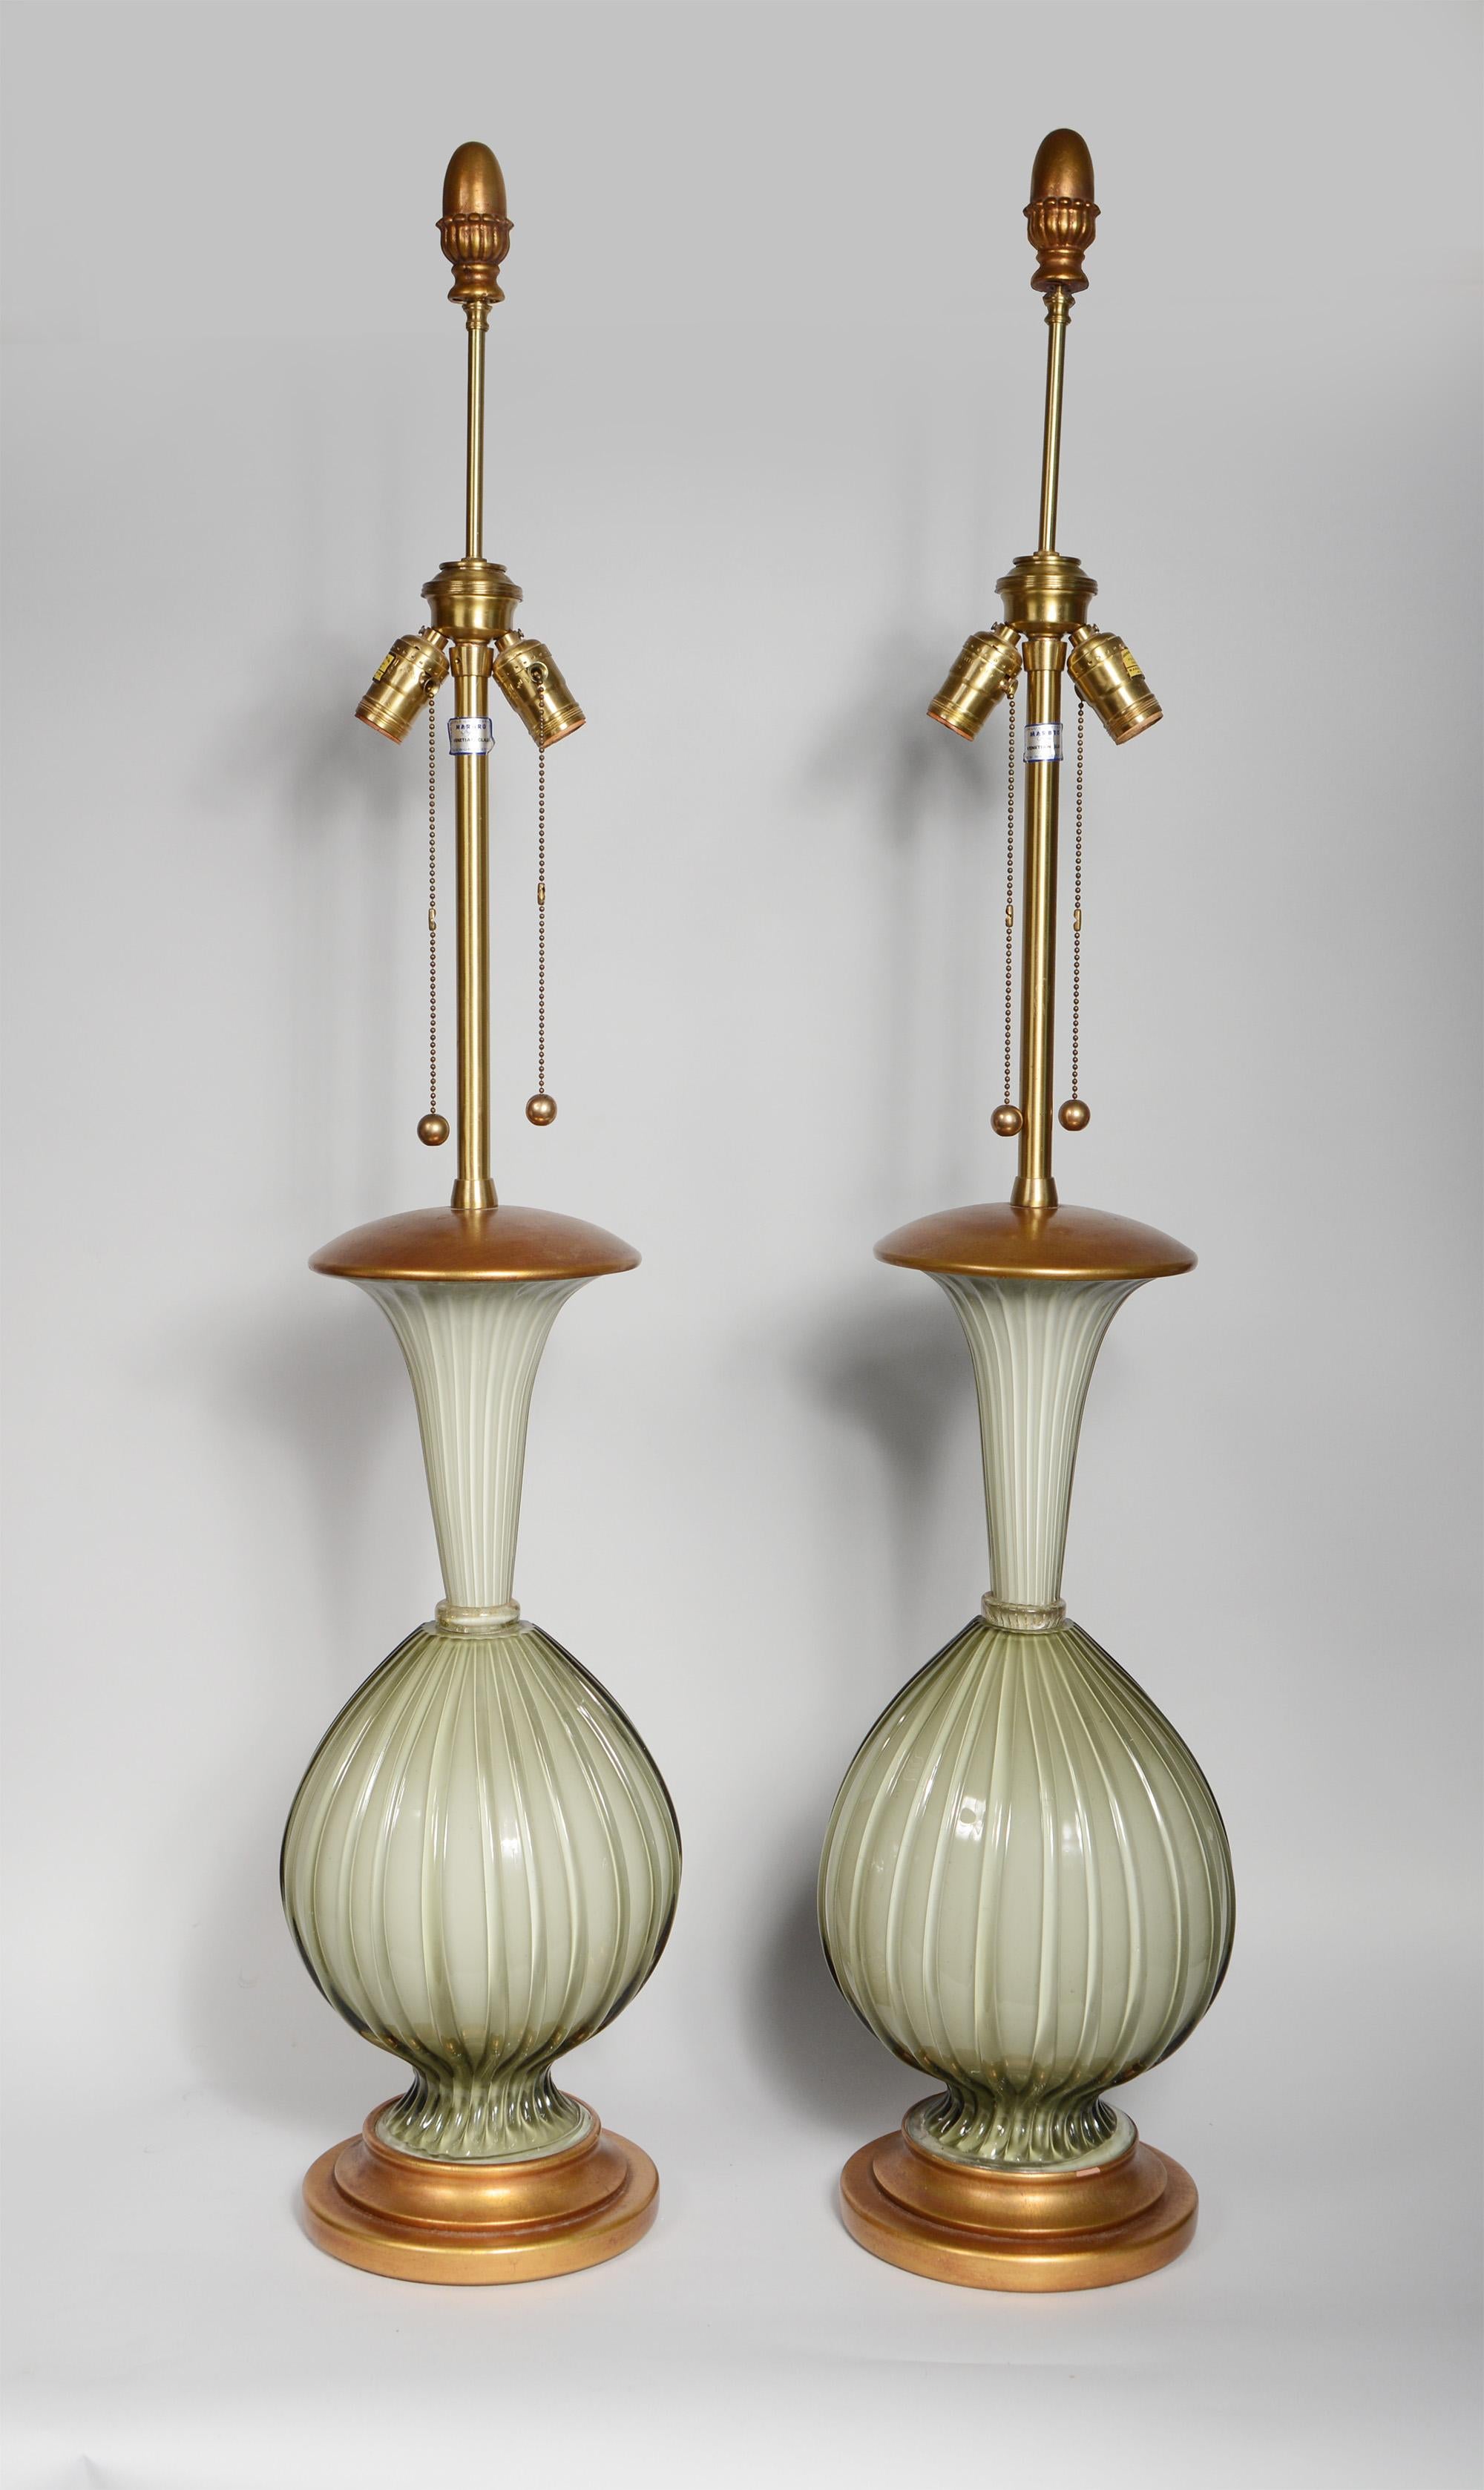 Paire de grandes lampes de table en verre vénitien par Marbro Lamp Company. Ceux-ci ont un verre nervuré gris chaud encastré dans du blanc. Ils ont des bases et des capuchons en bois doré. Les épis de faîtage dorés sont d'origine. Il y a une petite